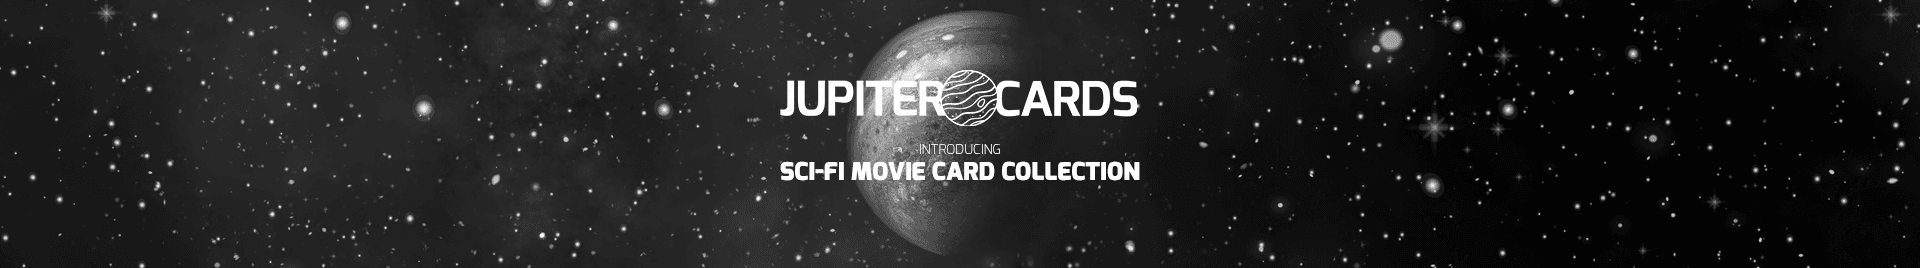 Jupiter_Cards bannière